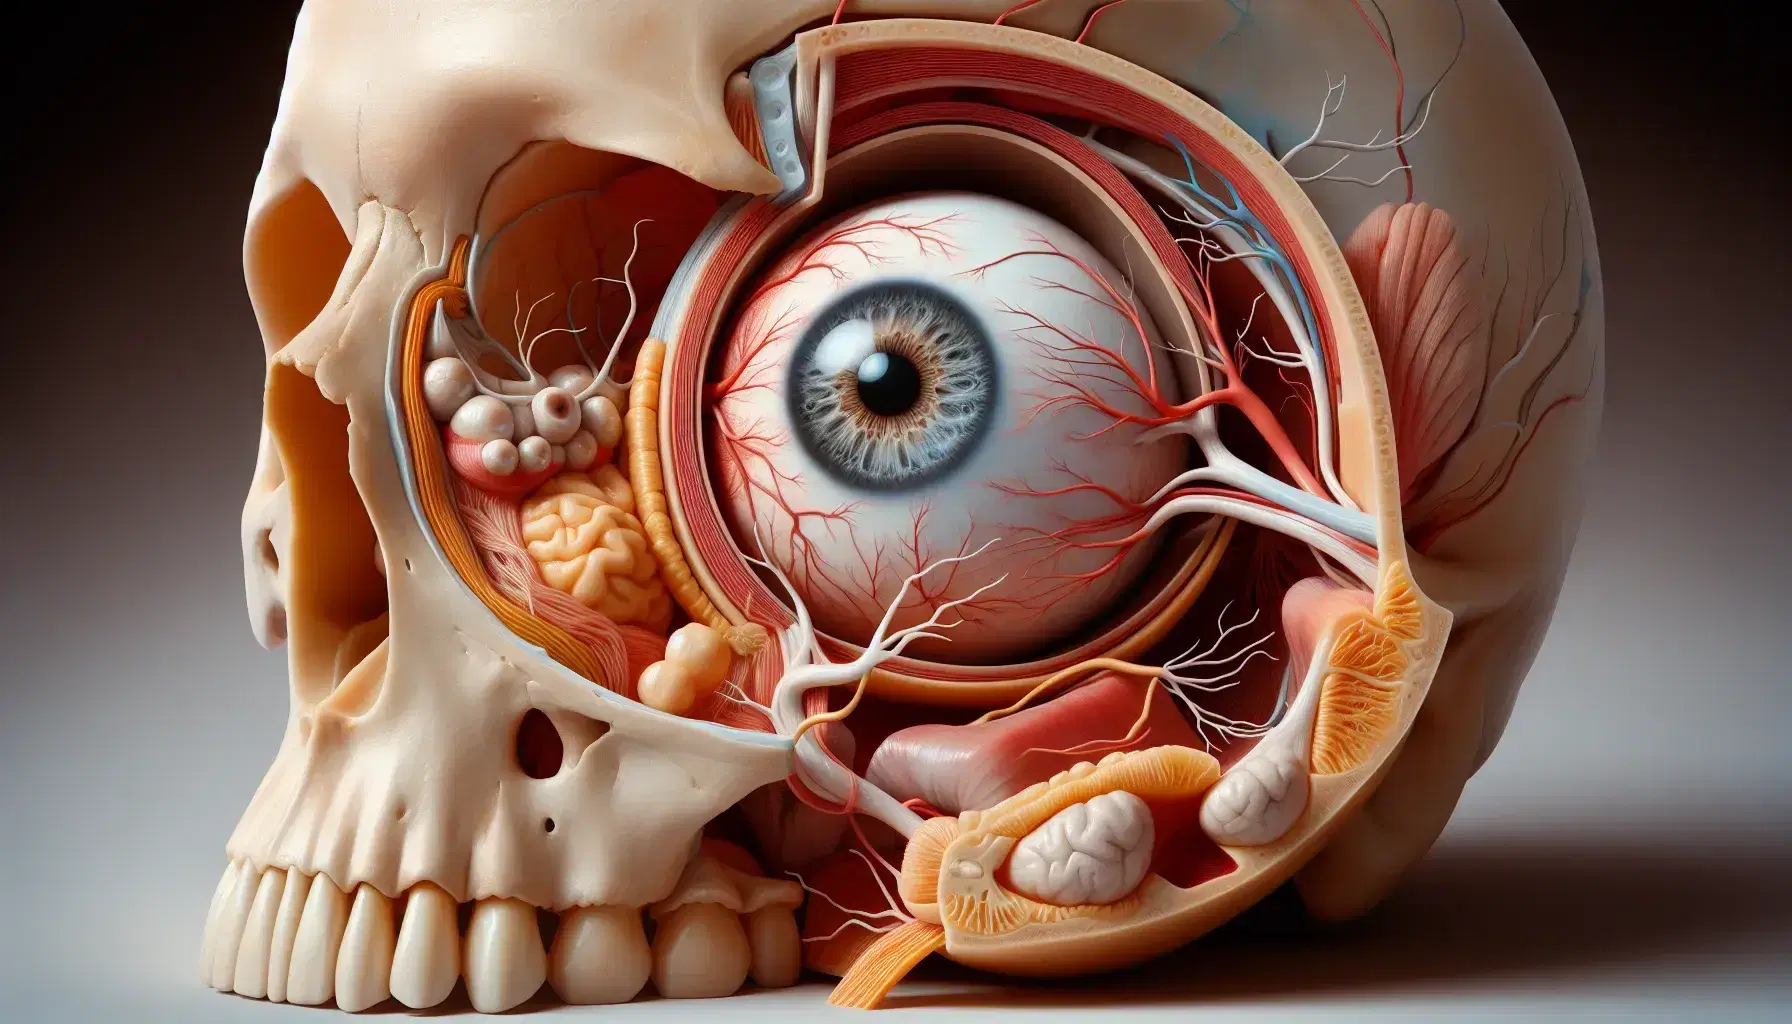 Representación anatómica detallada de la órbita humana con cráneo, músculos oculares, nervios, vasos sanguíneos y globo ocular con iris azul o marrón y pupila central.